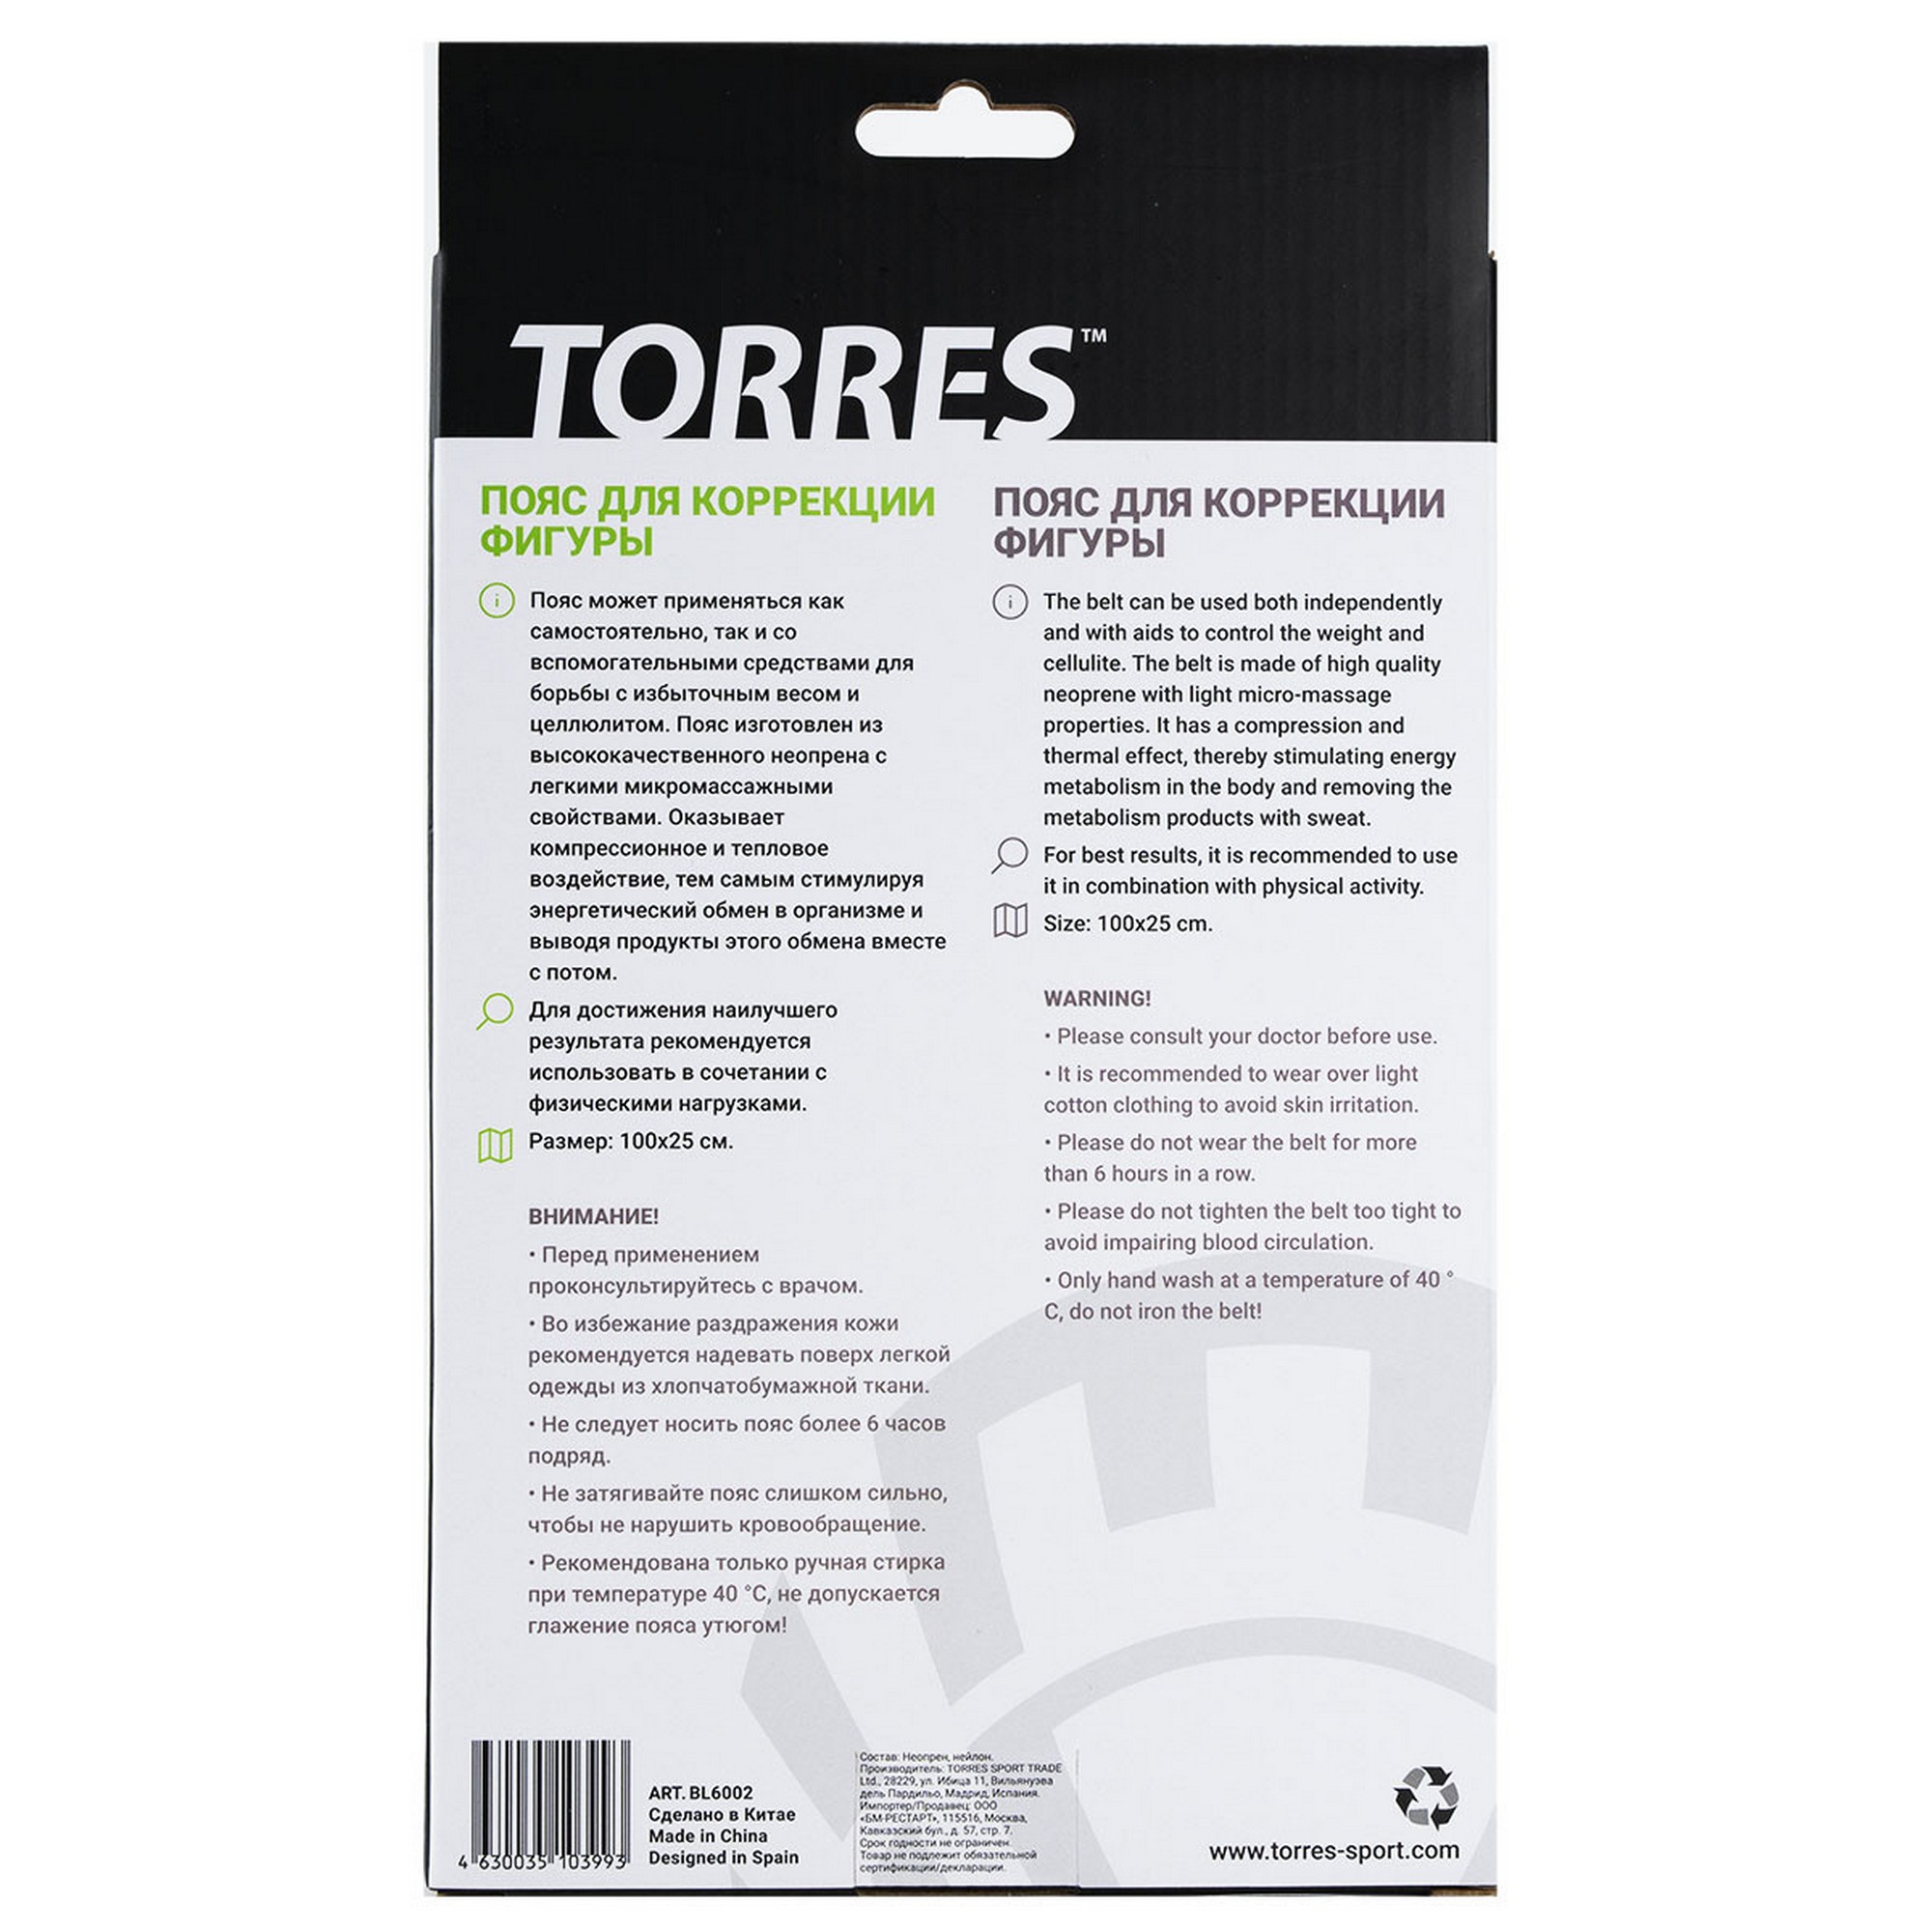 Пояс для коррекции фигуры Torres неопрен 3 мм, длина 100 см, шир. 25 см BL6002 серый 2000_2000